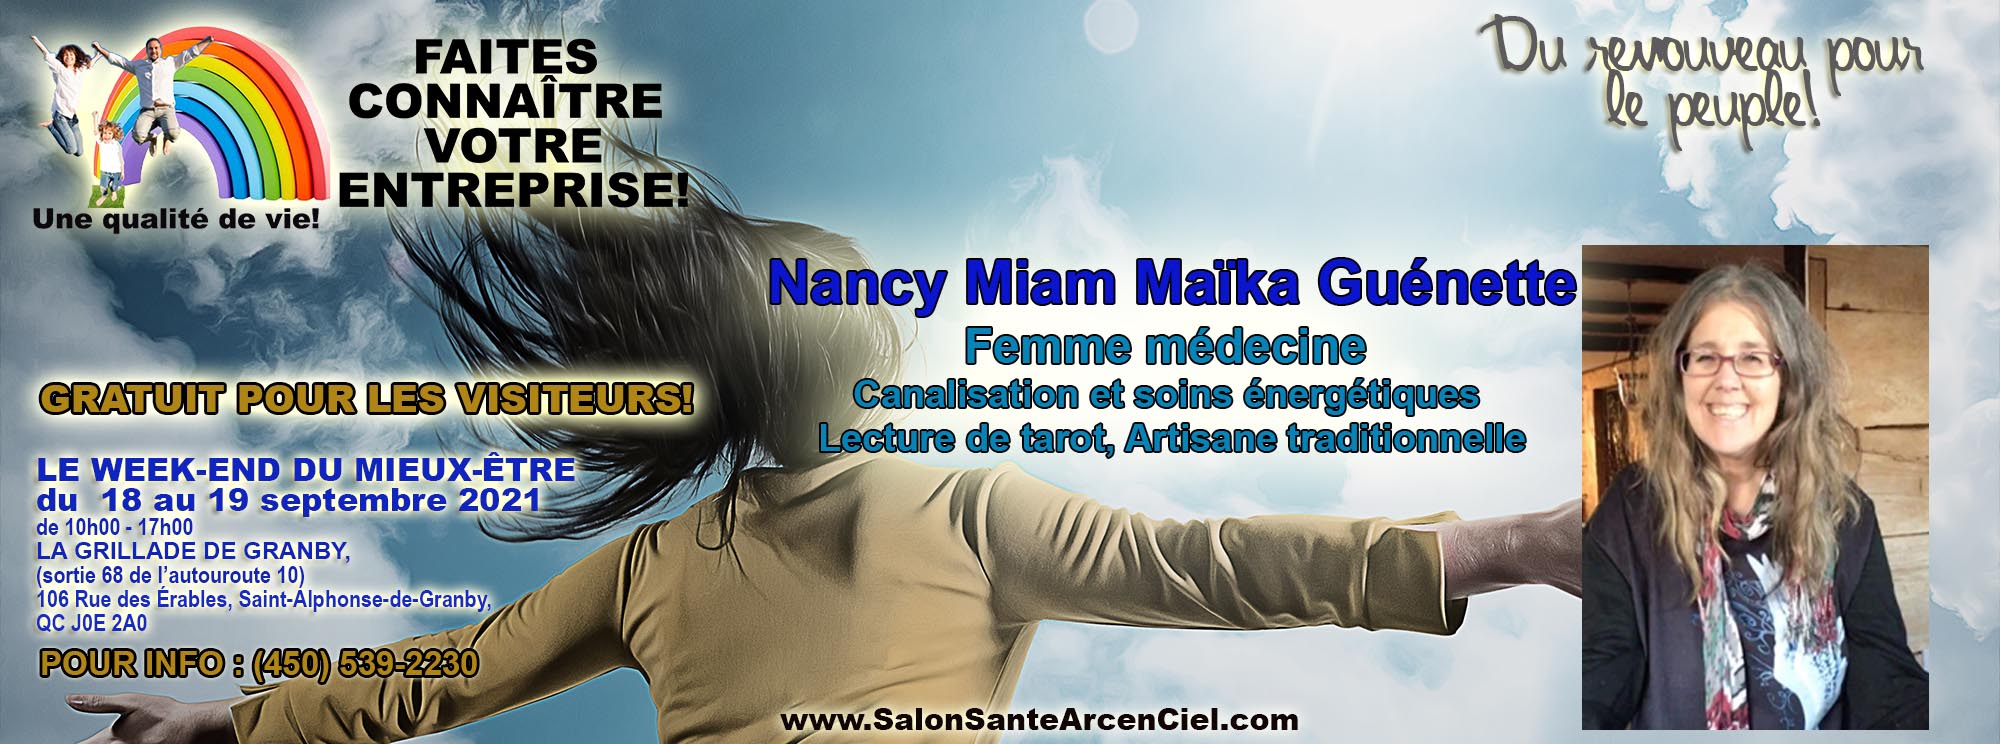 7 Nancy Miam Maika Guenette EXPOSANTS PAGE PRO NO1  Salon Sante Arc enCiel 18 19 Septembre2021COPY